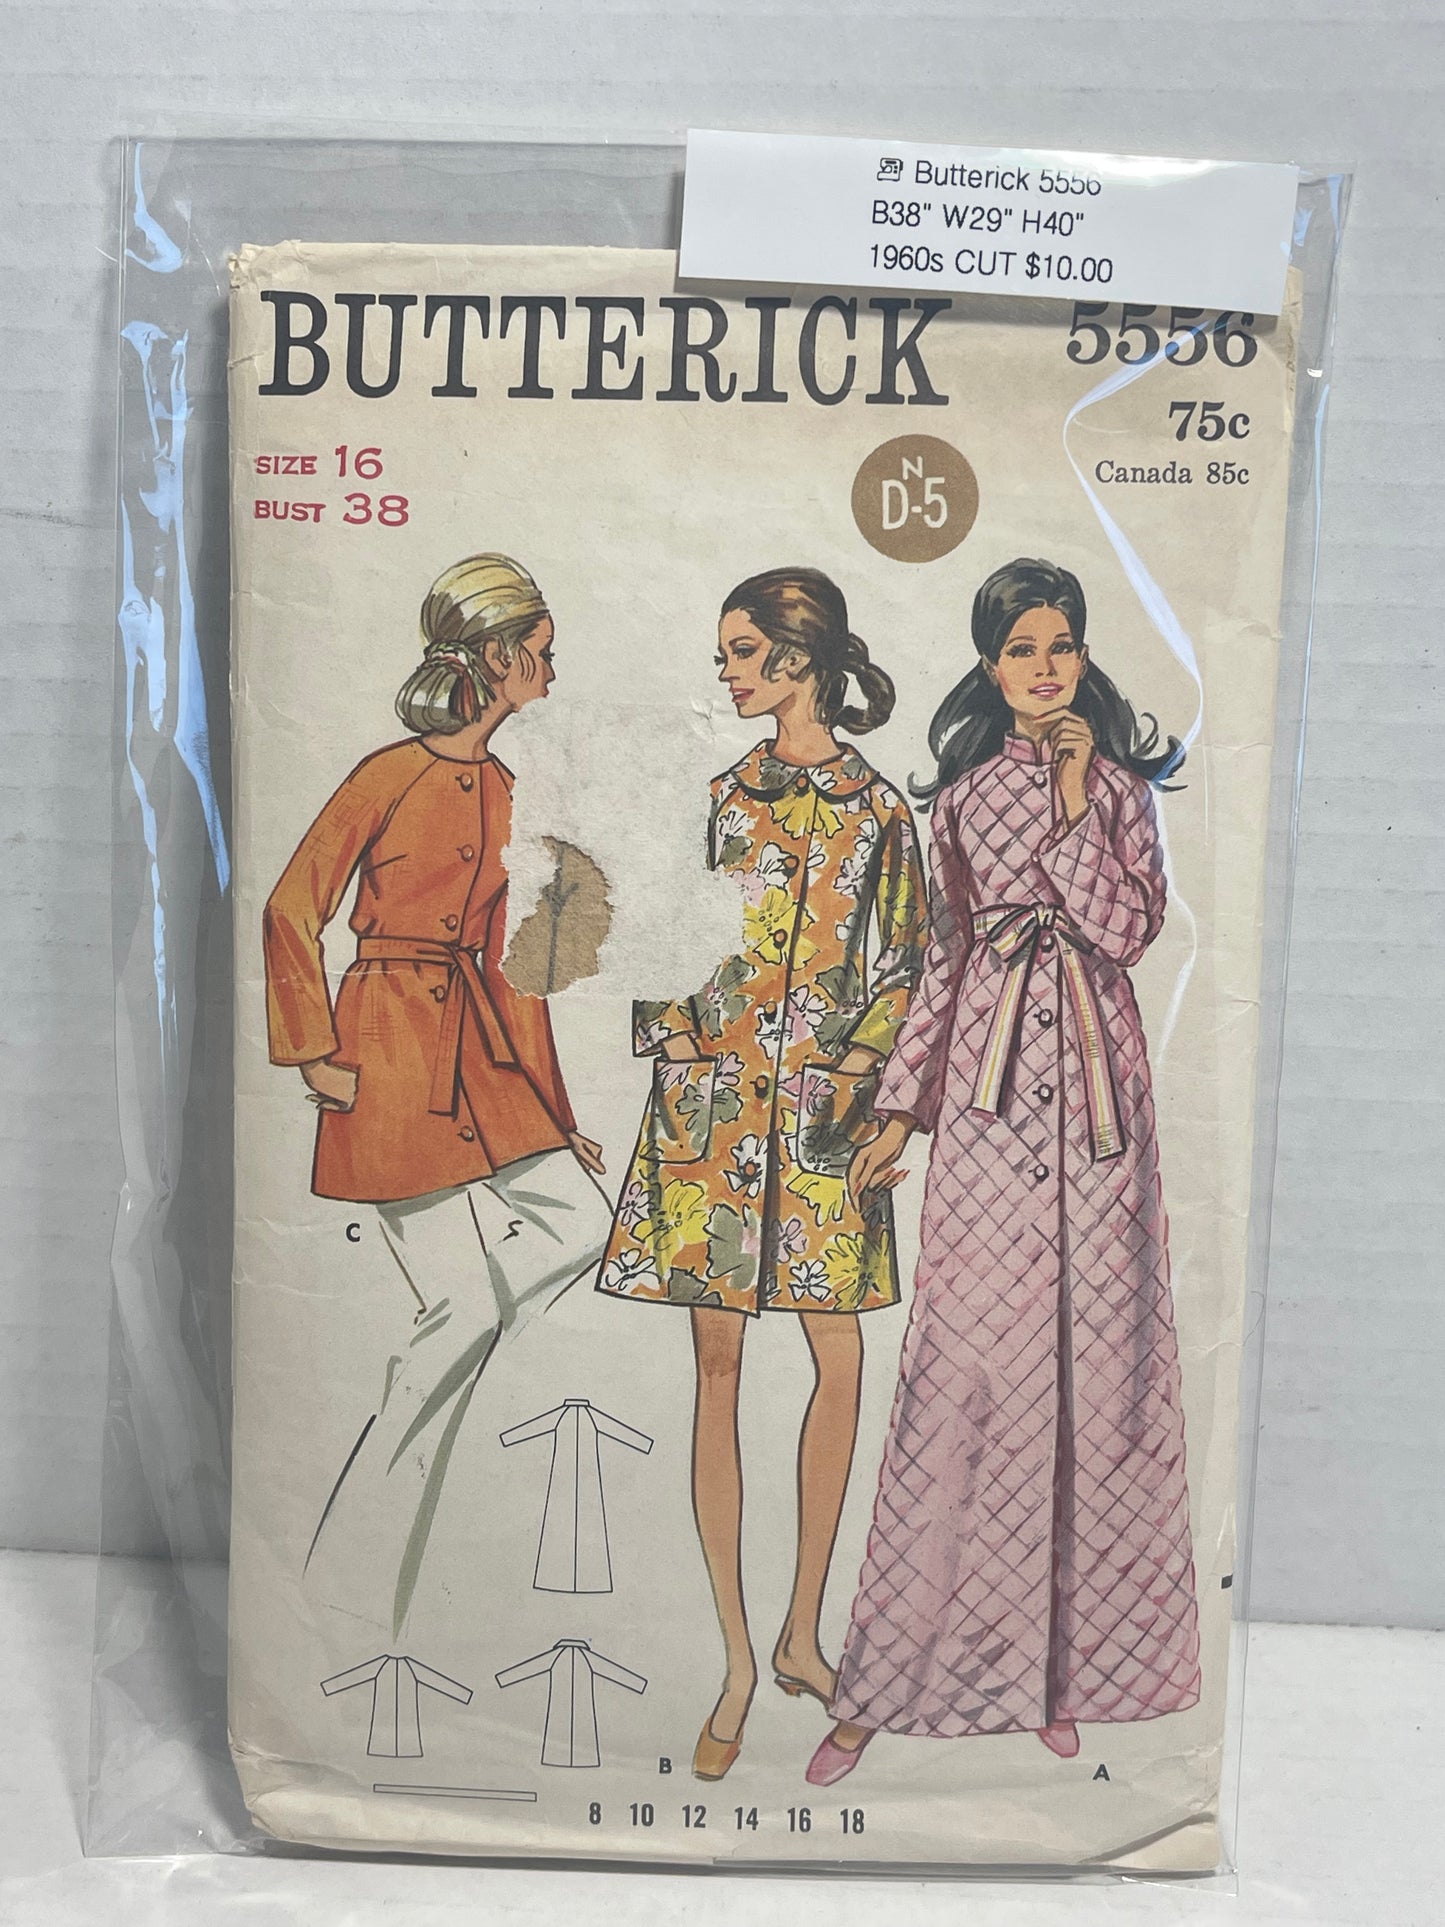 Butterick 5556